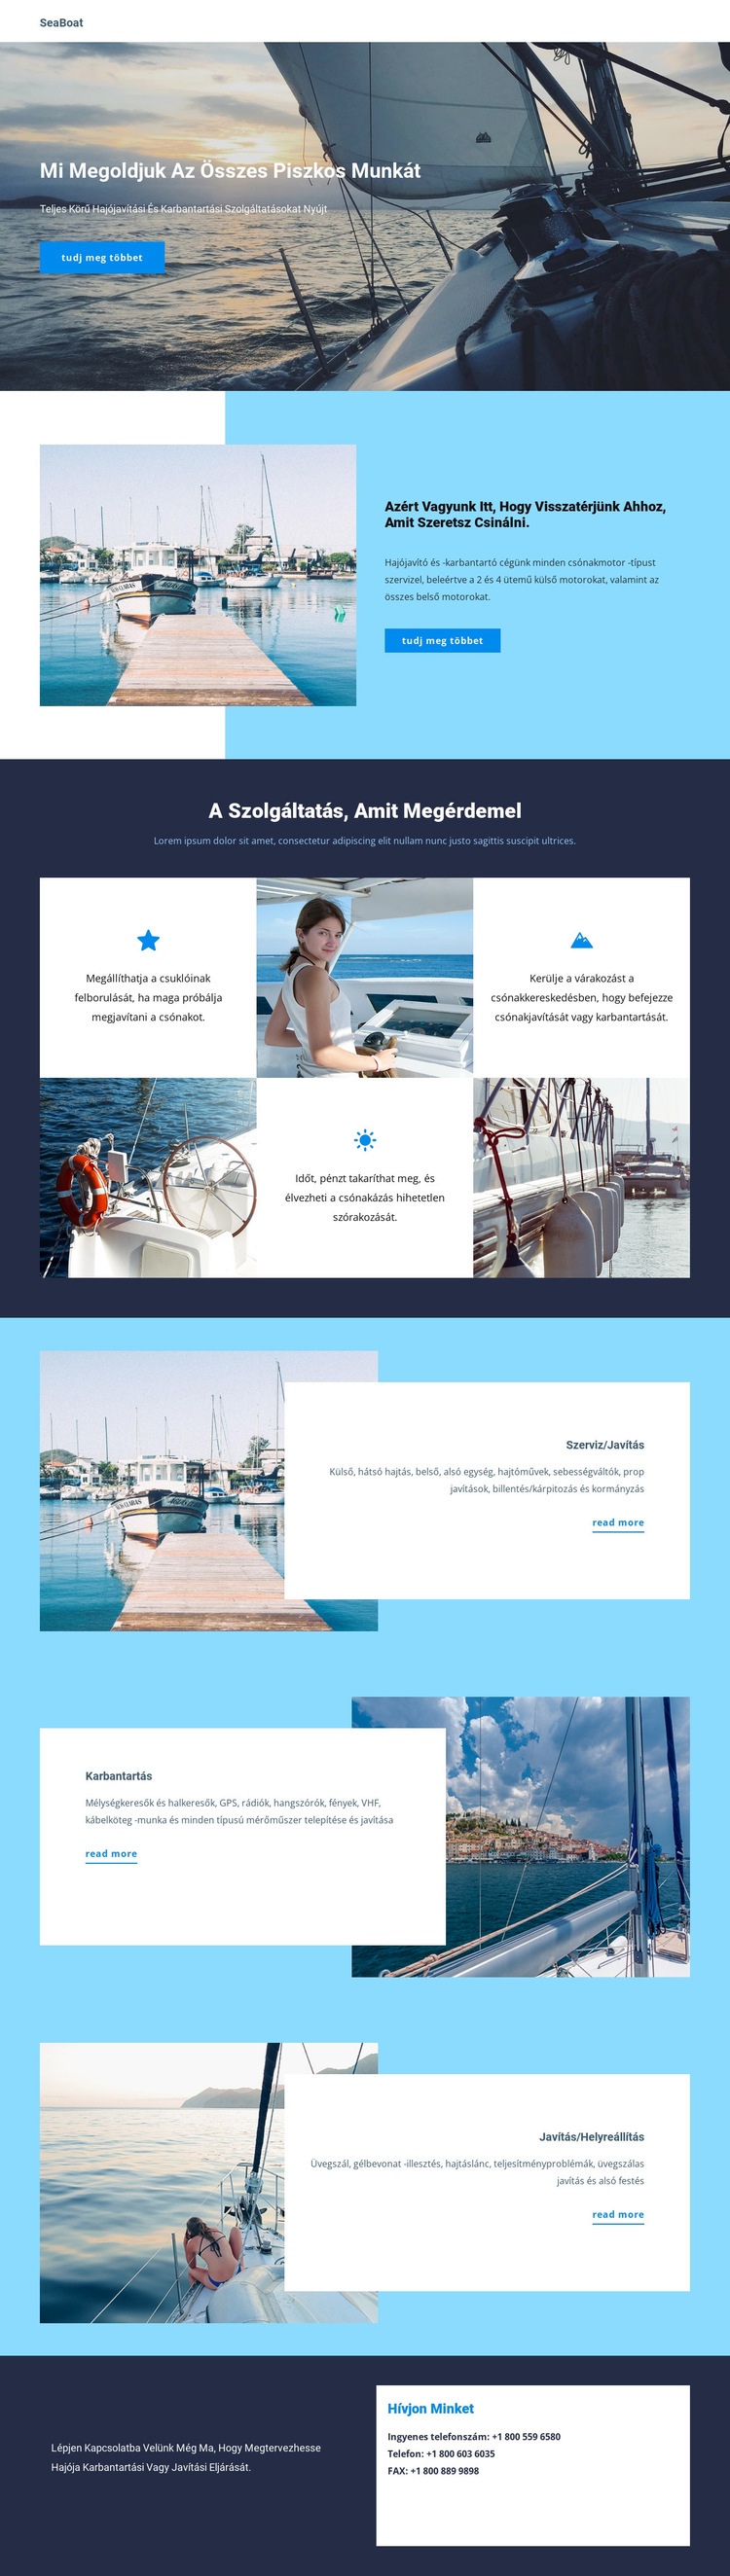 Utazás a Seaboat -on Weboldal tervezés